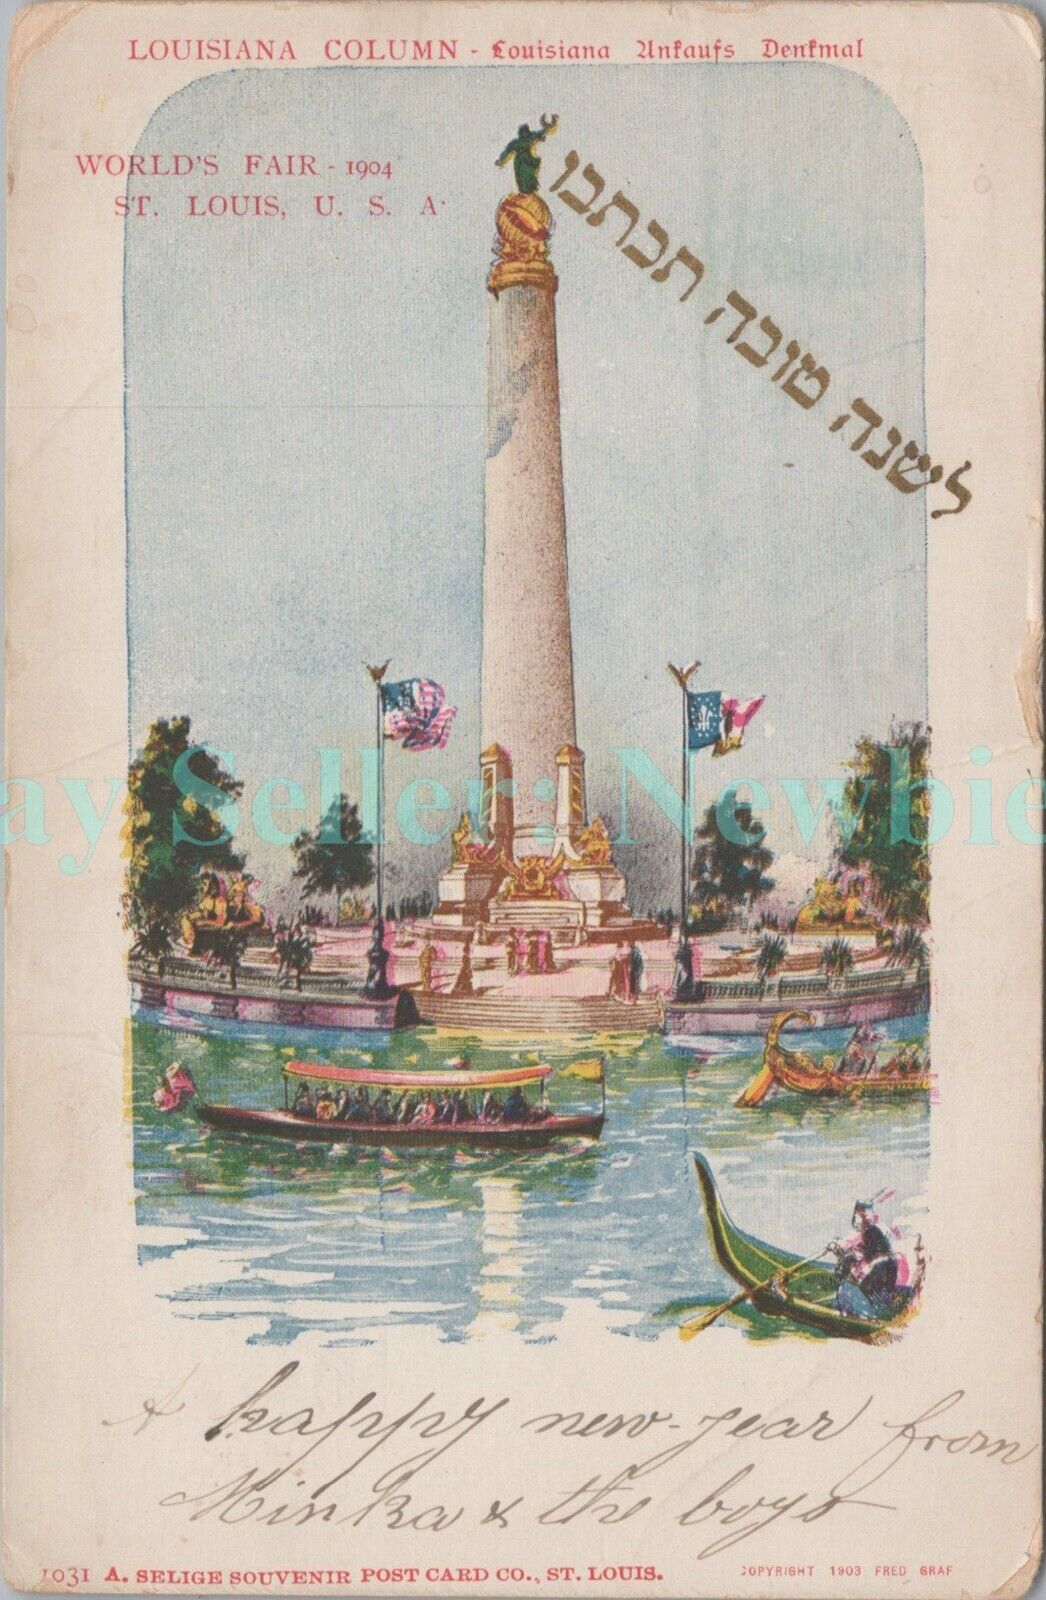 St Louis MO - 1904 WORLDS FAIR ROSH HASHANAH - Judaica Postcard 1903 PMC